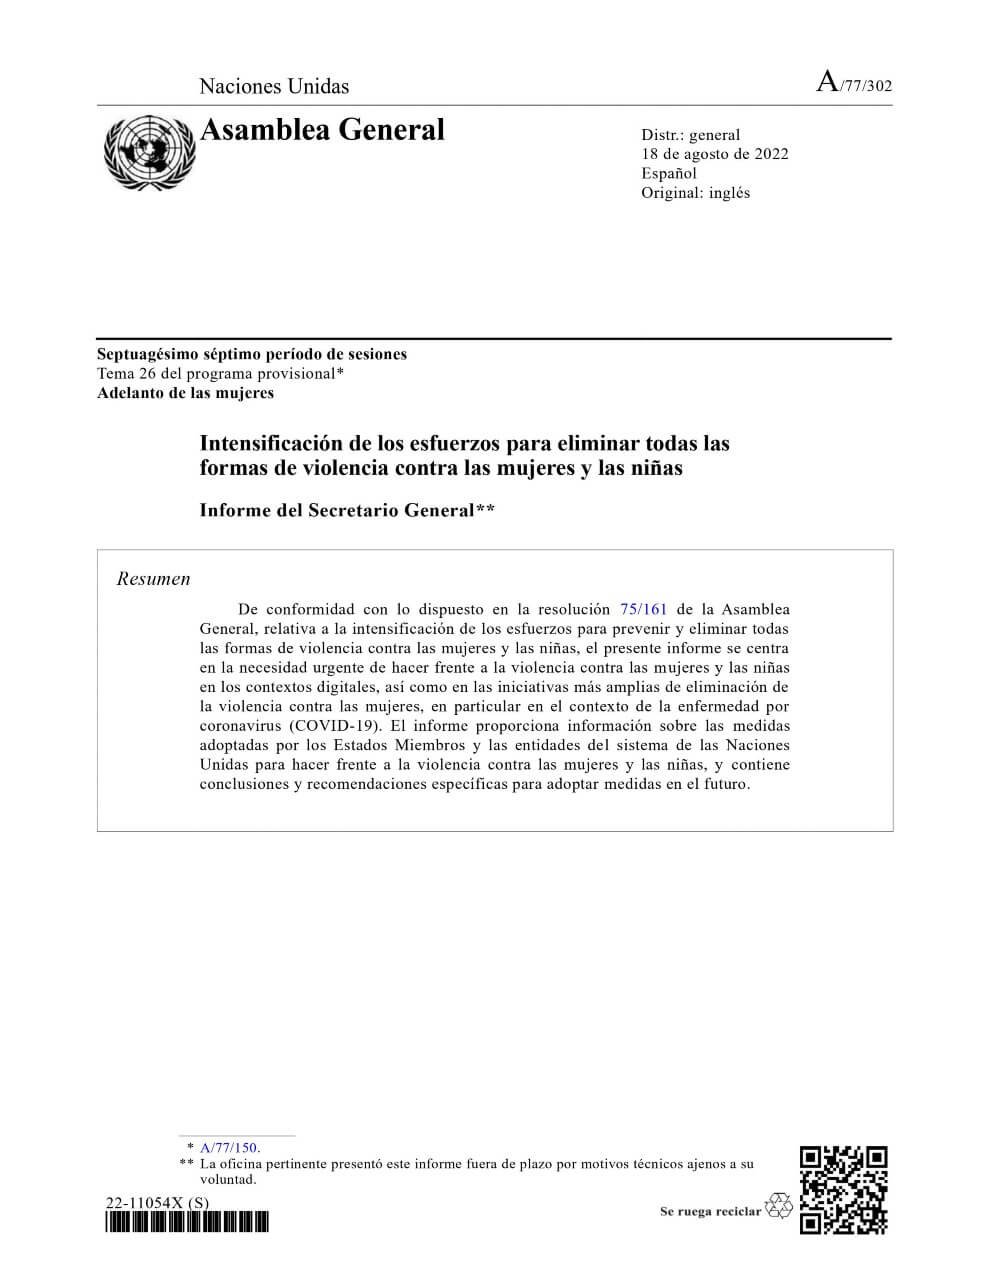 Intensificación de los esfuerzos para eliminar todas las formas de violencia contra las mujeres y las niñas: Informe del Secretario General (2022)